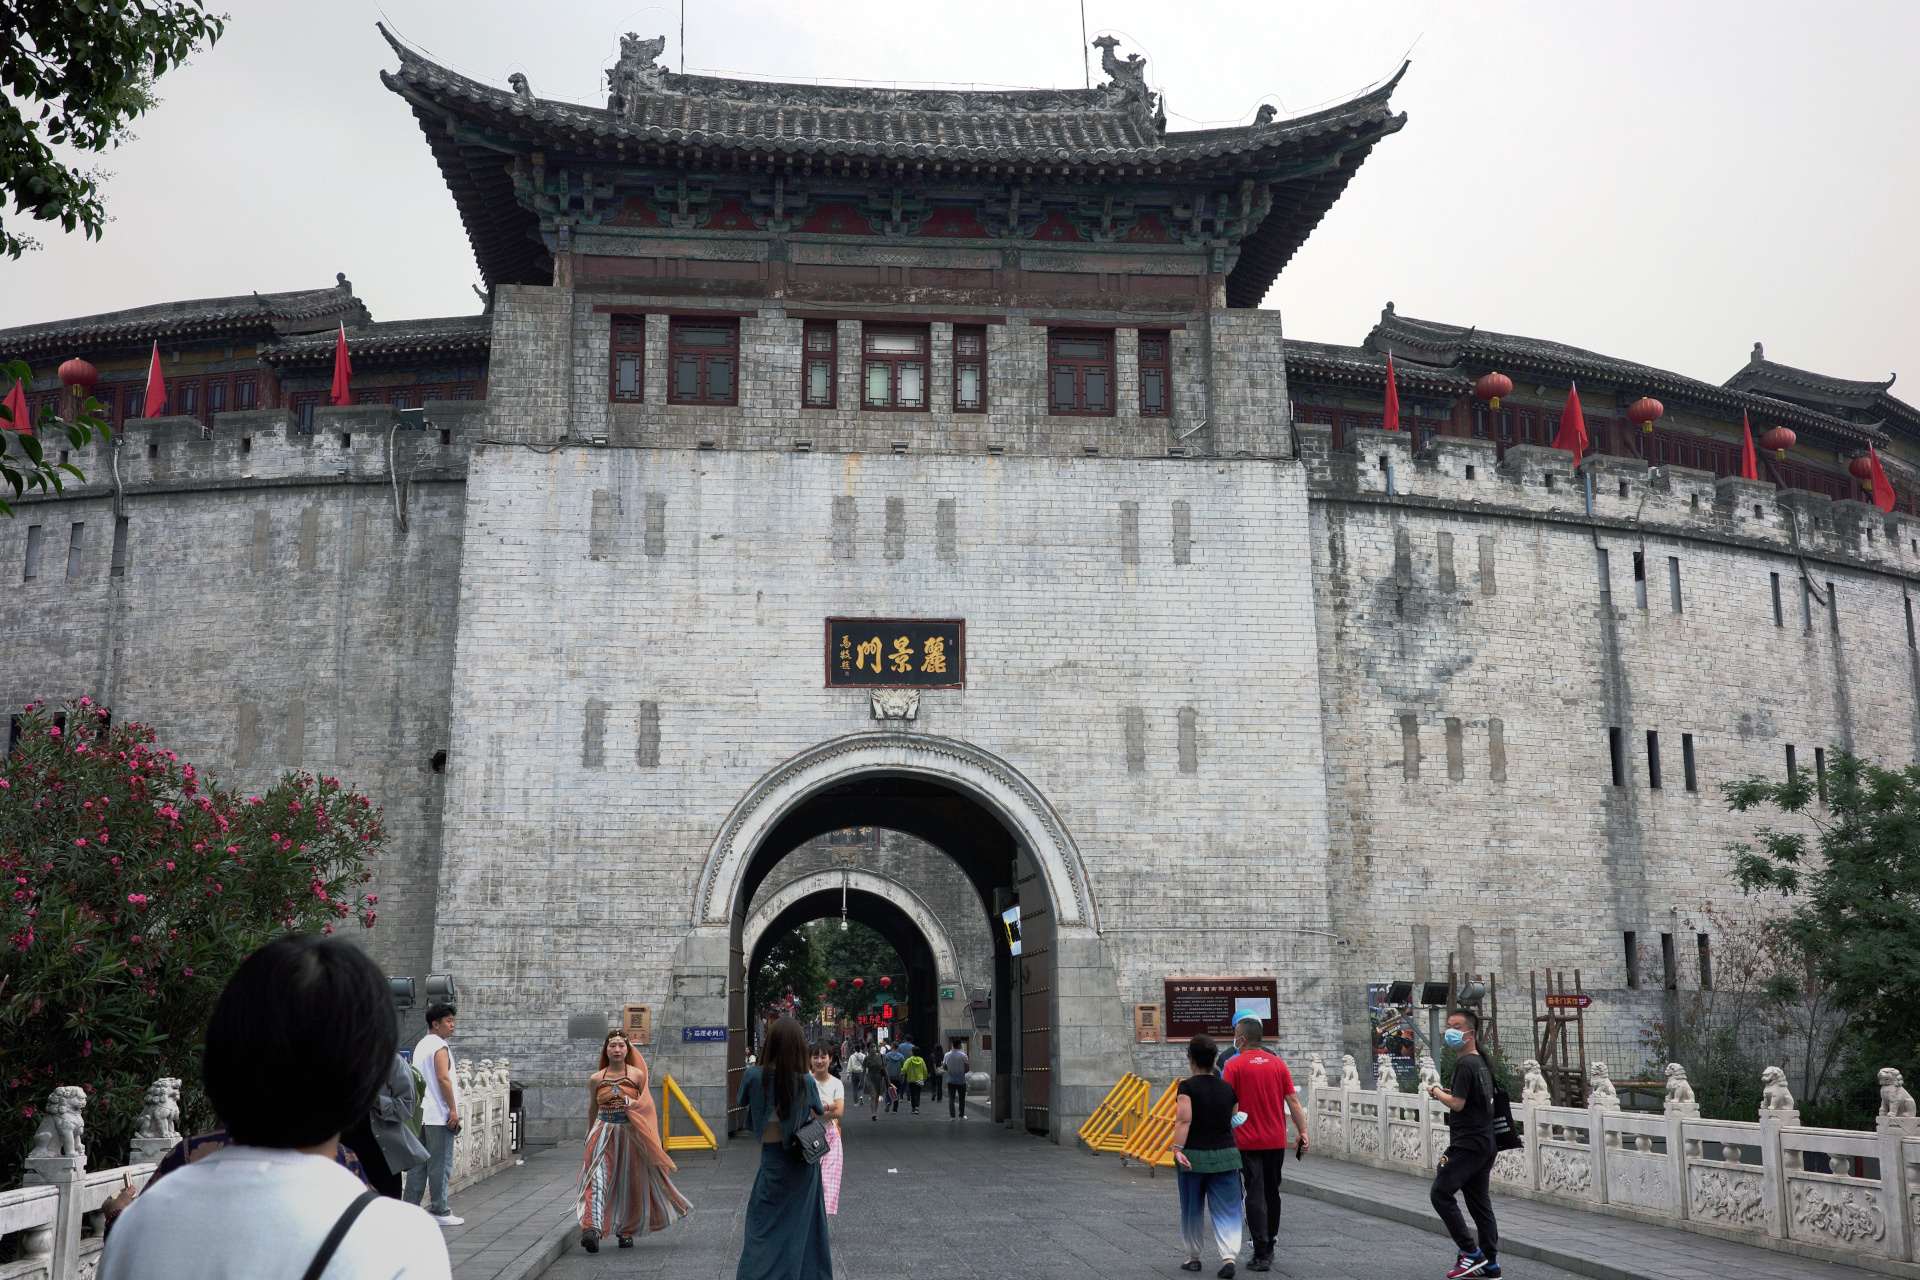 Lijing Gate